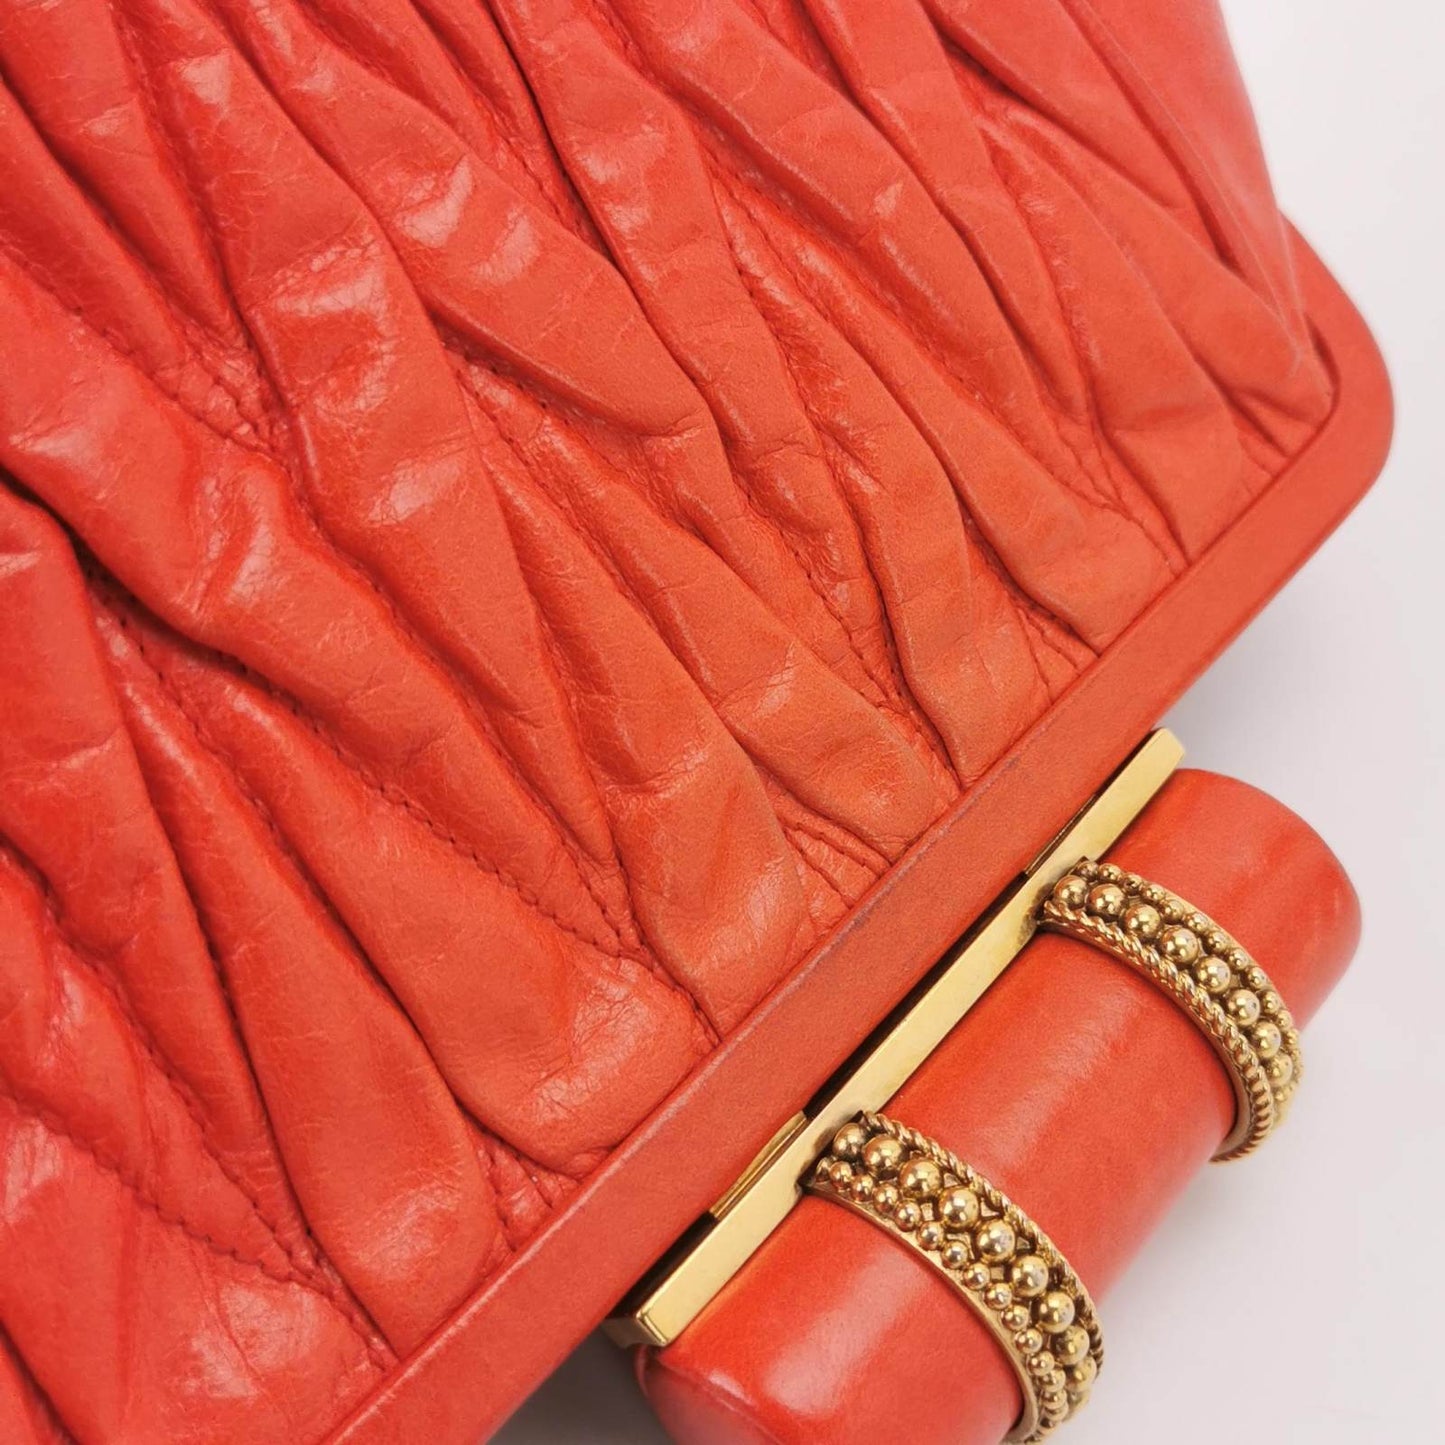 Miu Miu Gather Red Leather Clutch Second Bag